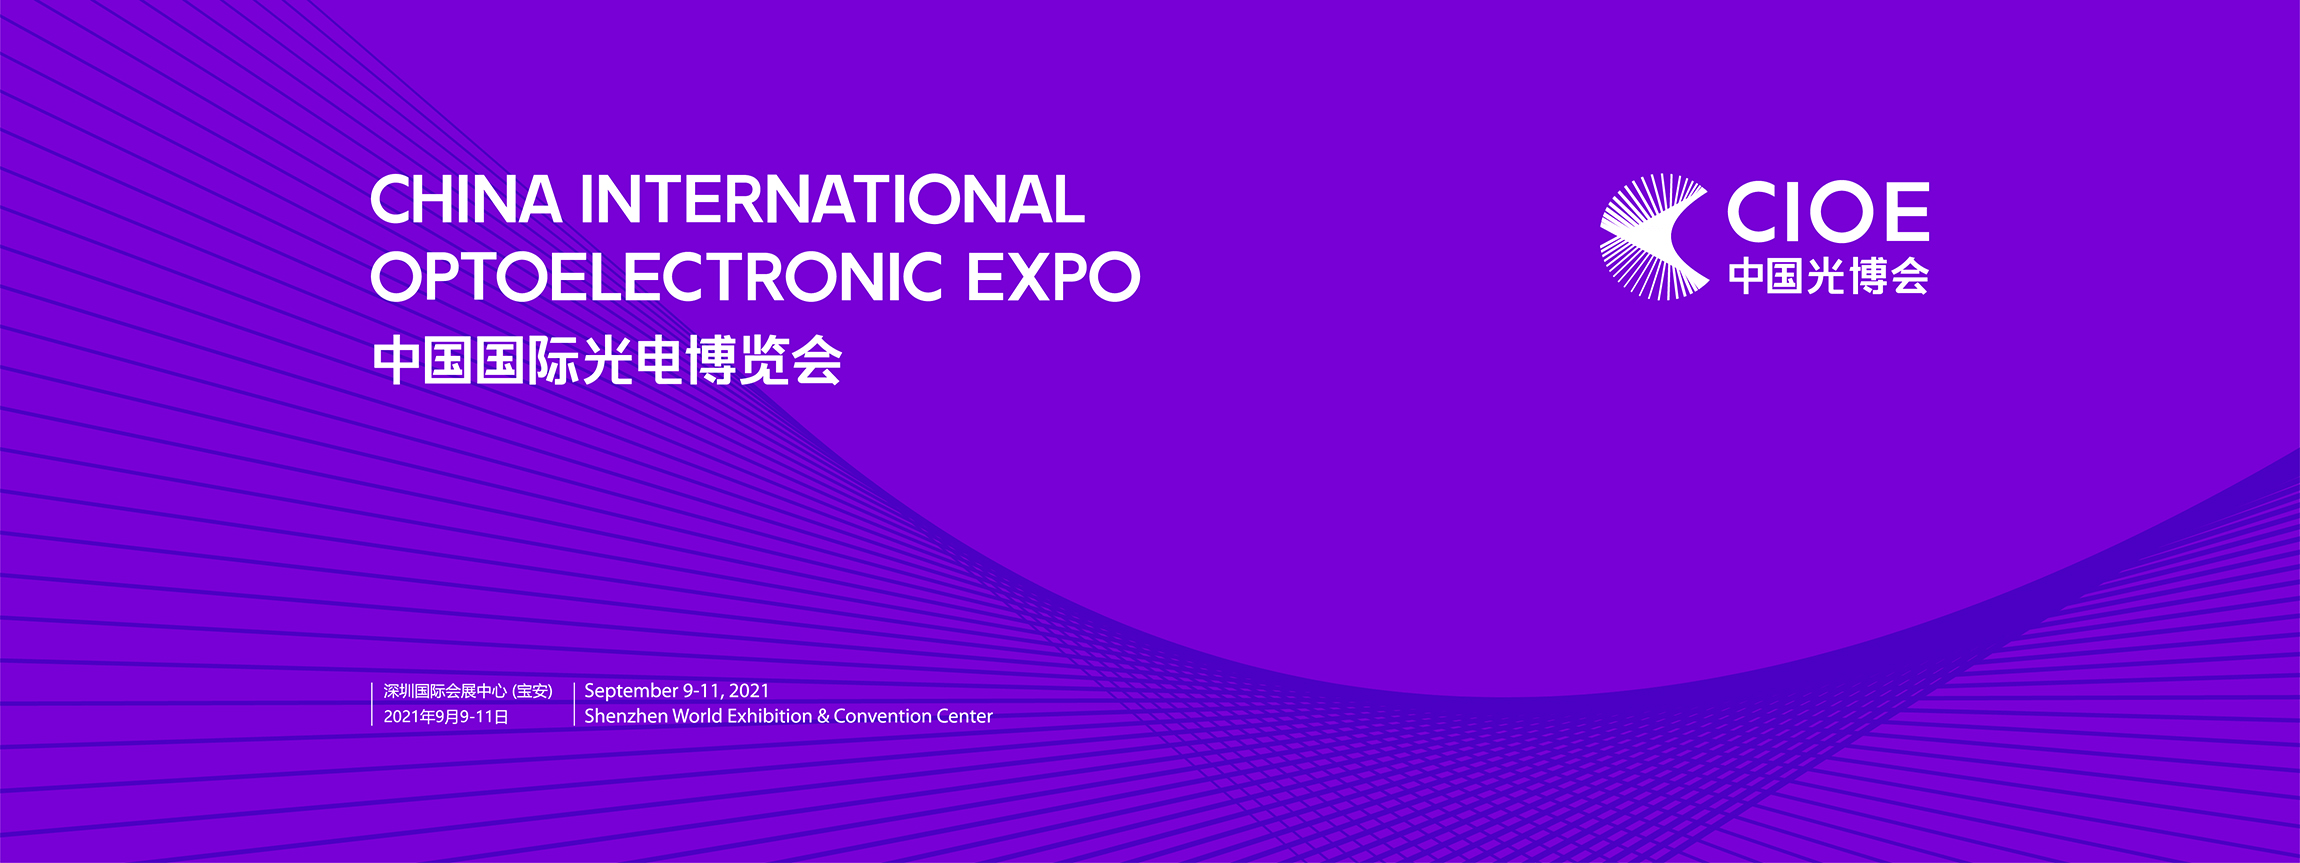 中国国际光电博览会LOGO设计,博览会VIS设计